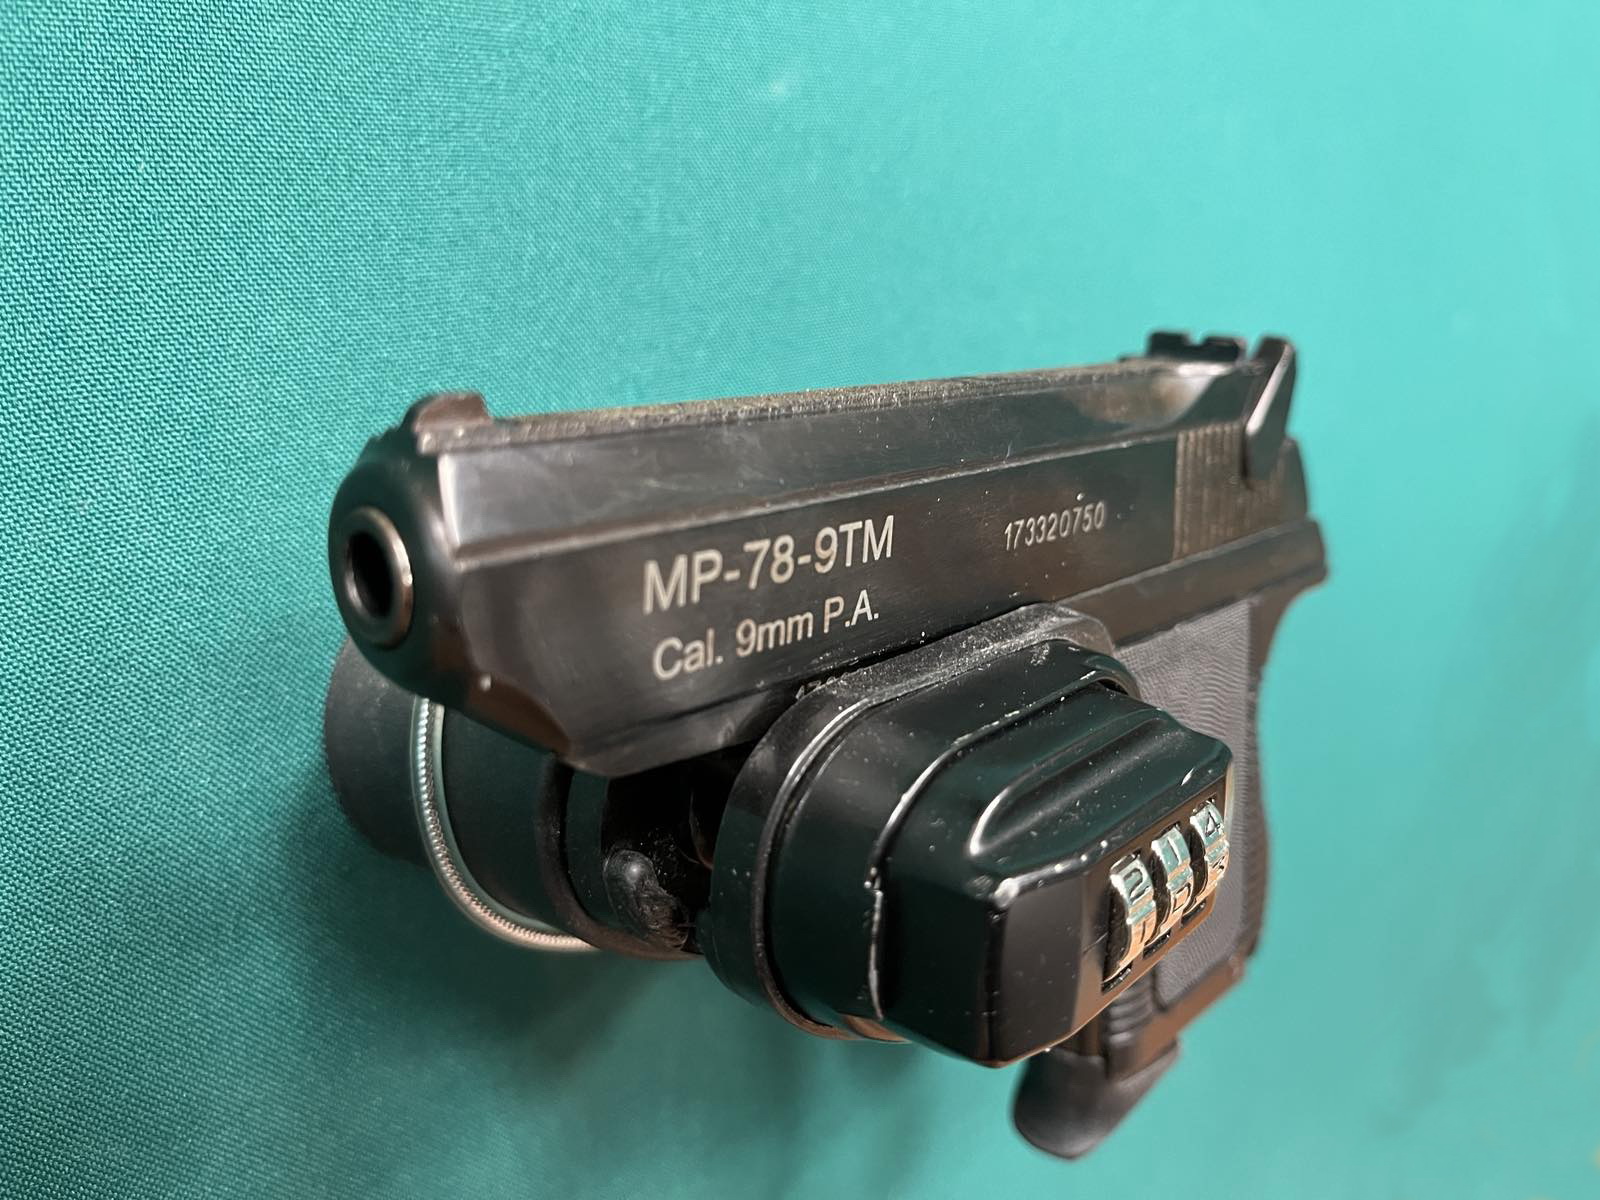 Пистолет МР-78-9ТМ, калибр 9мм РА, ООП